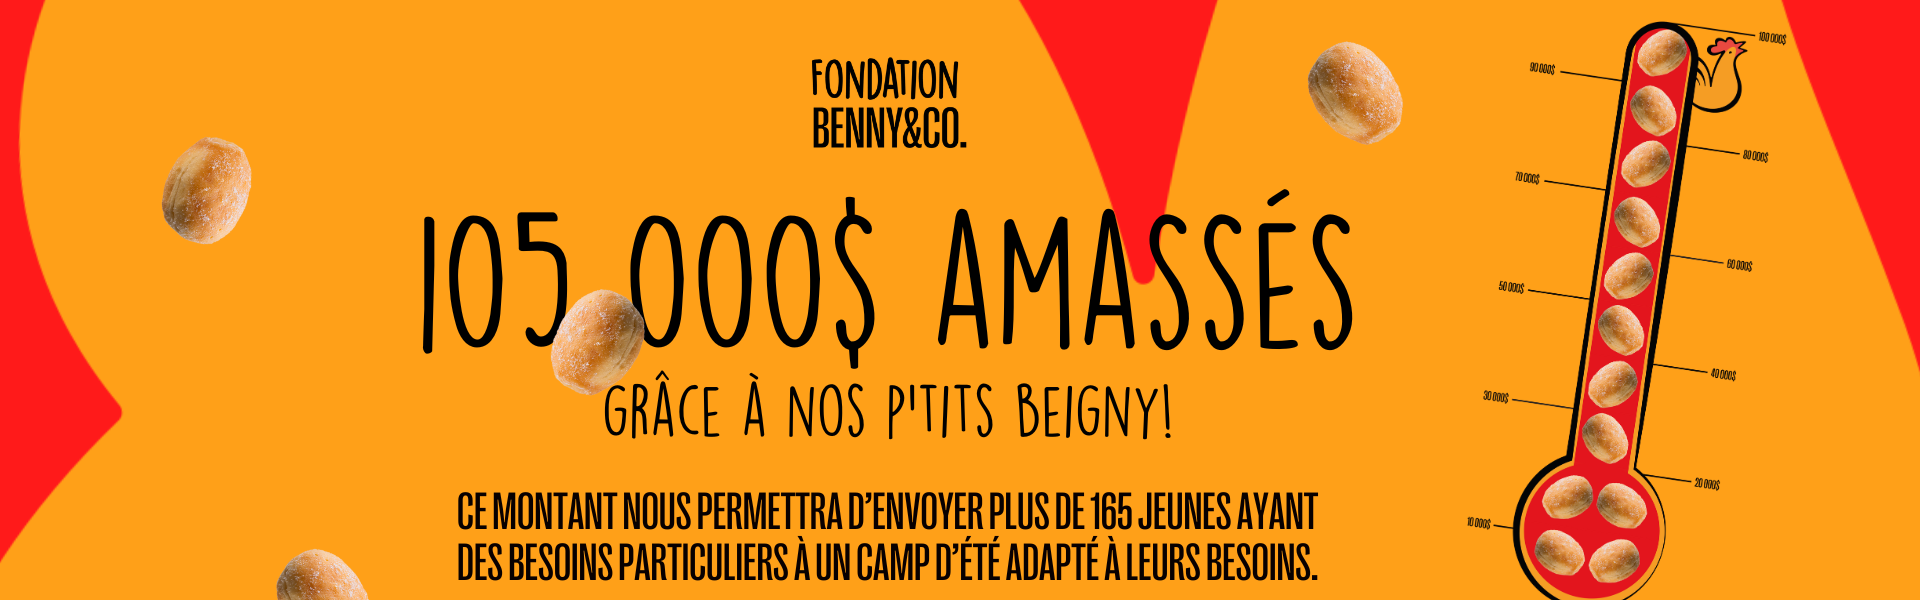 Fondation Benny&Co. - Benny & Co.